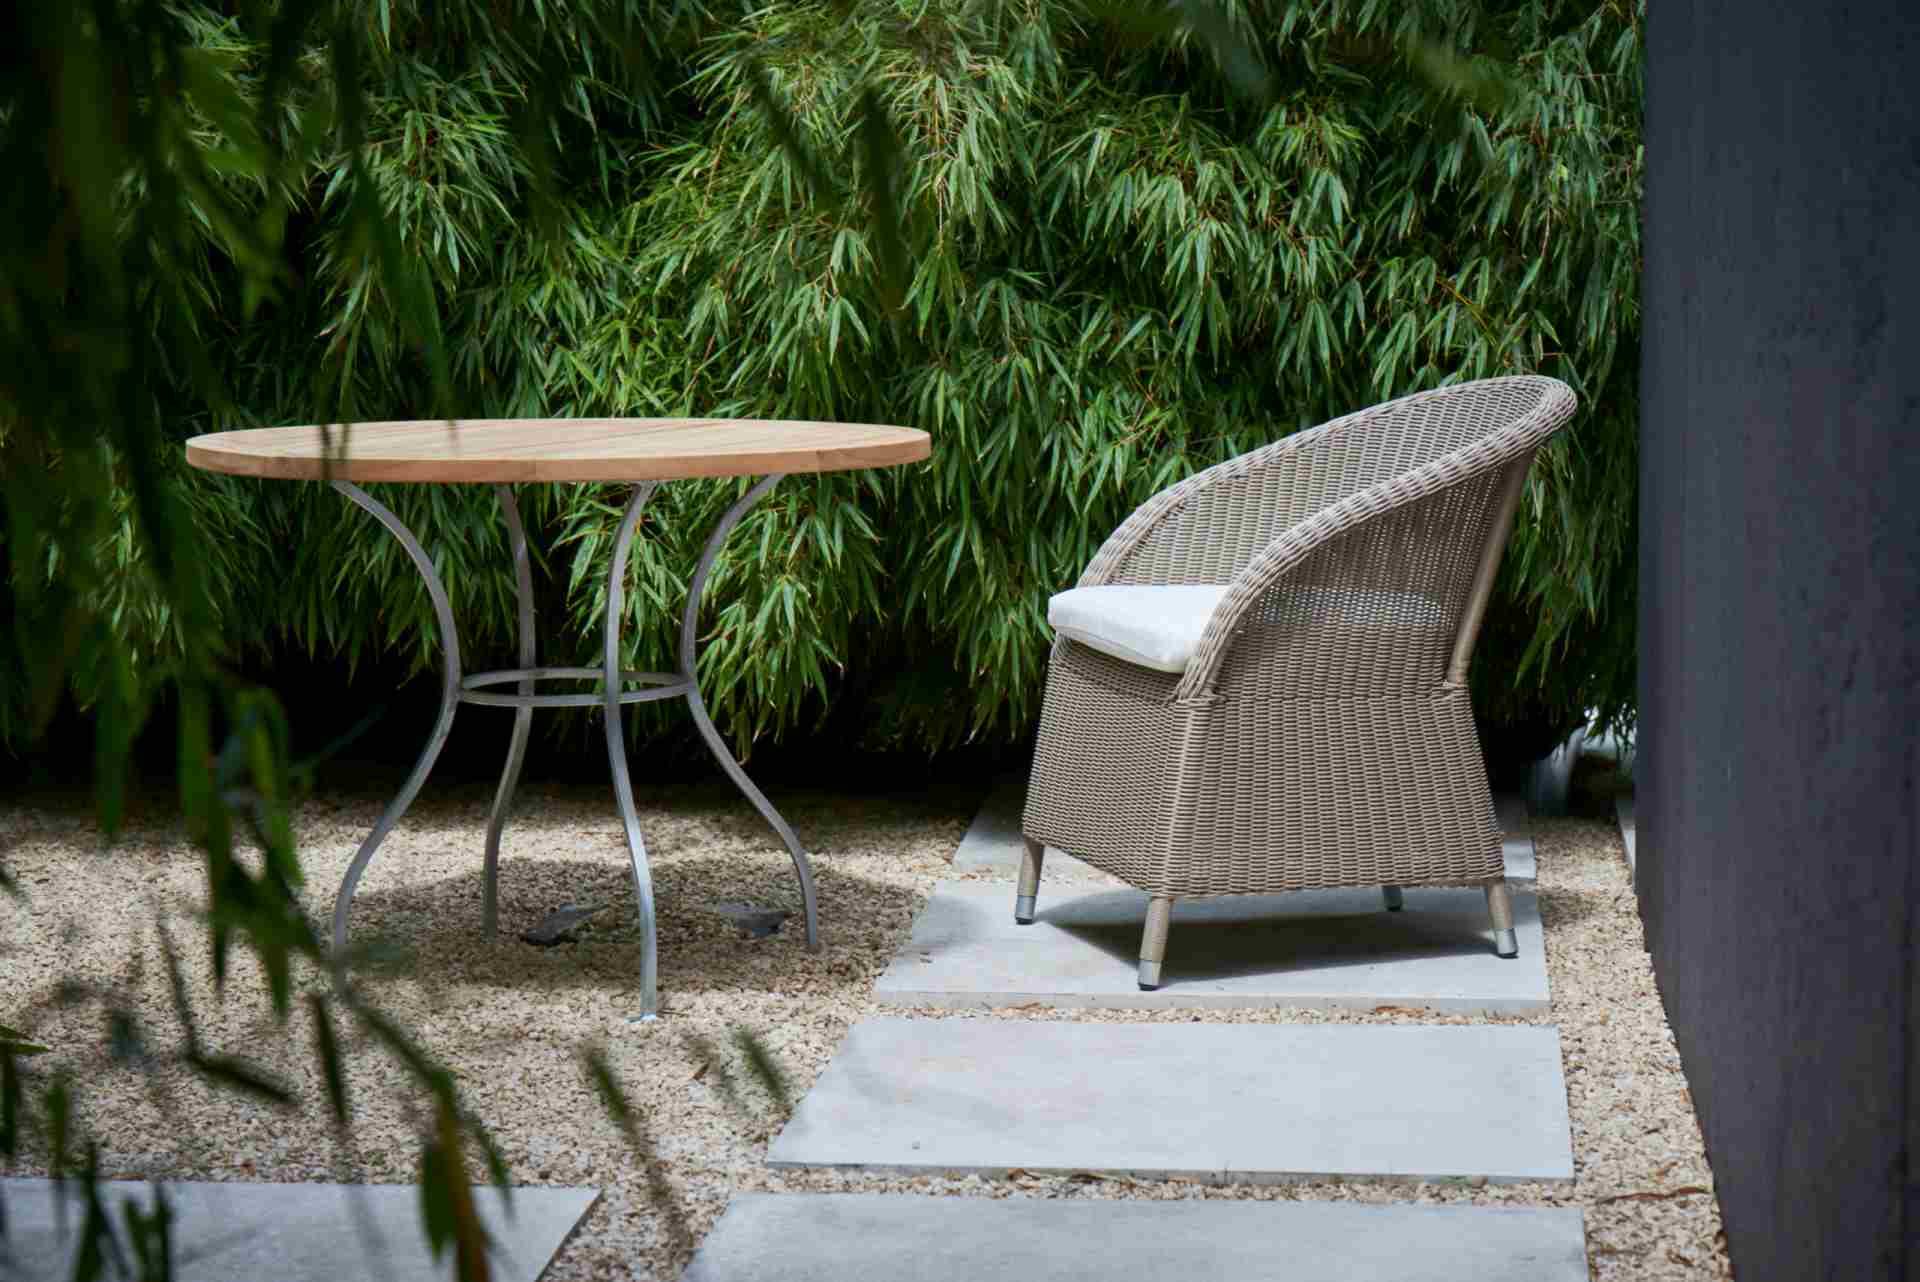 Der klassische Gartensessel Romantik wurde speziell für denn Outdoor-Bereich gefertigt. Hergestellt wurde dieser von der Marke Jan Kurtz. Die Farbe des Sessels ist Taupe.